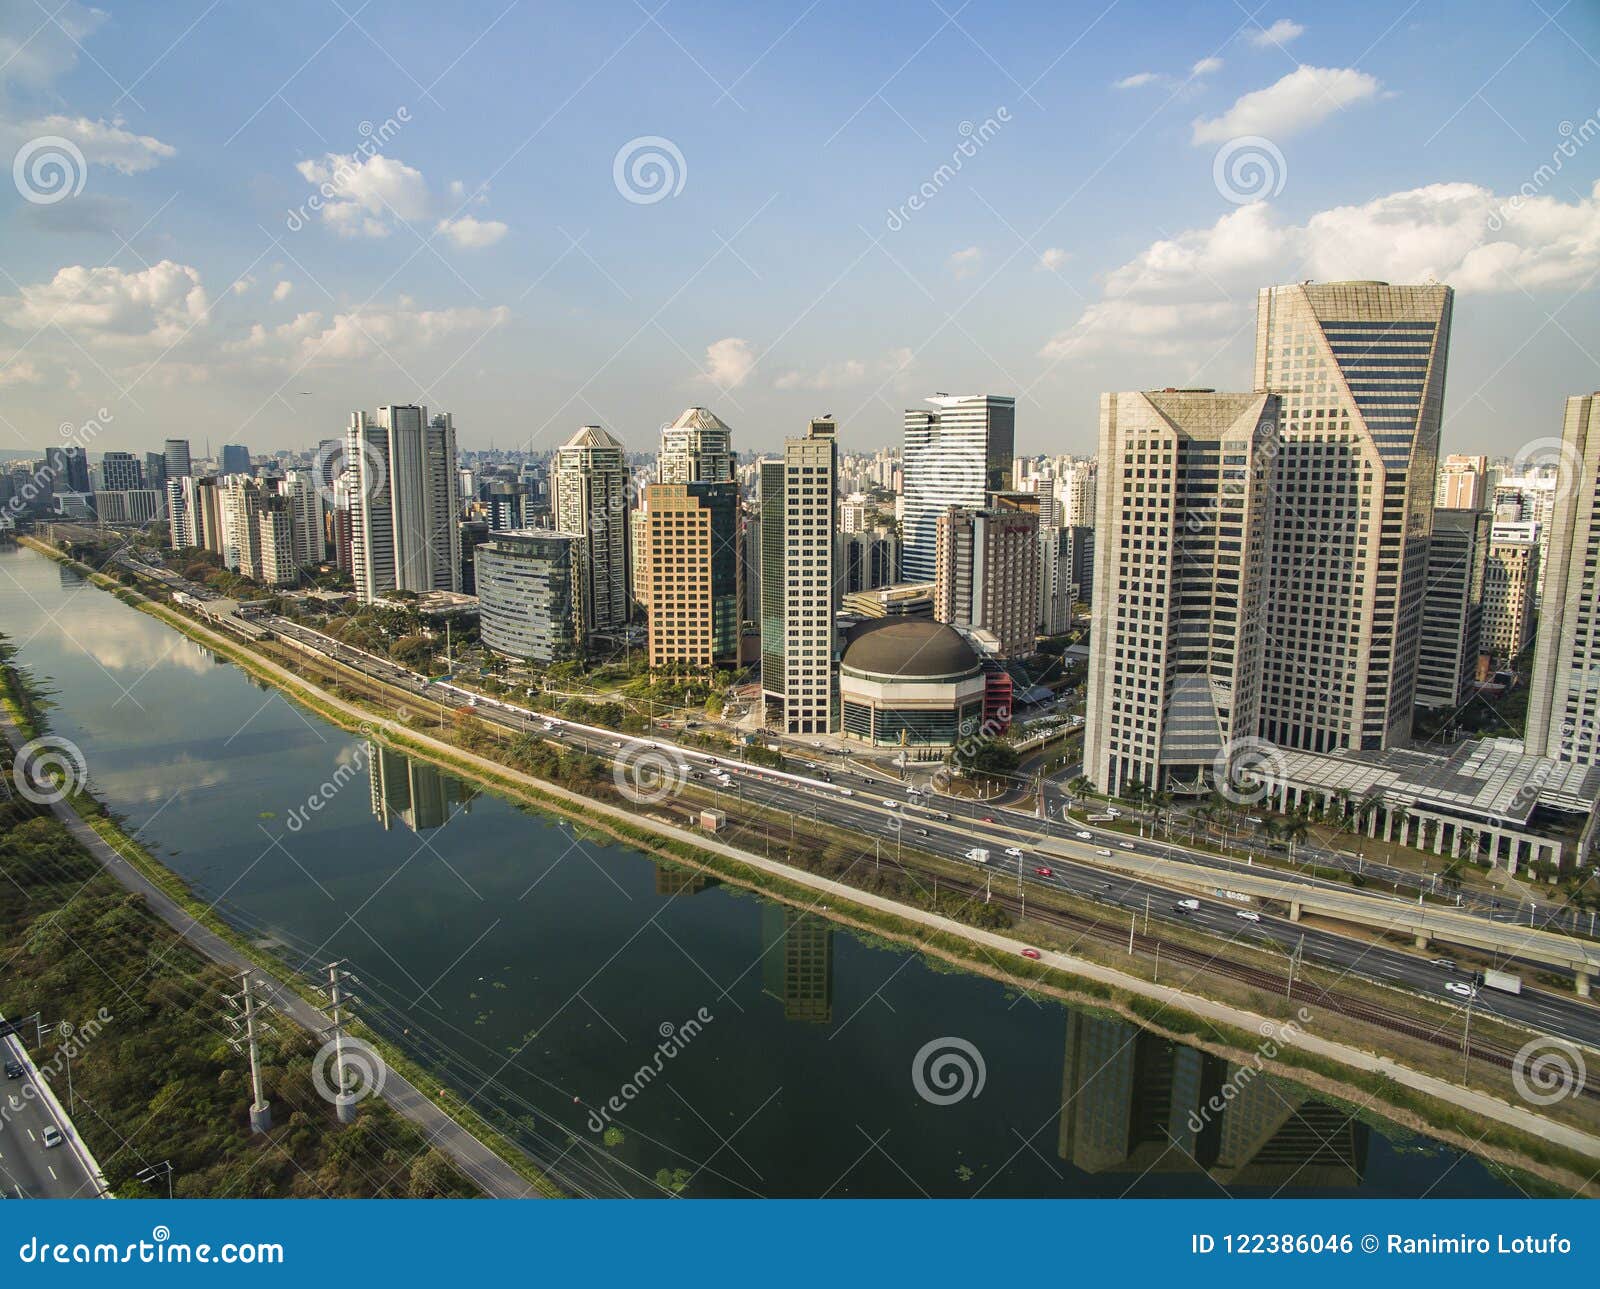 city of sao paulo brazil south america, marginal pinheiros avenue and pinheiros river